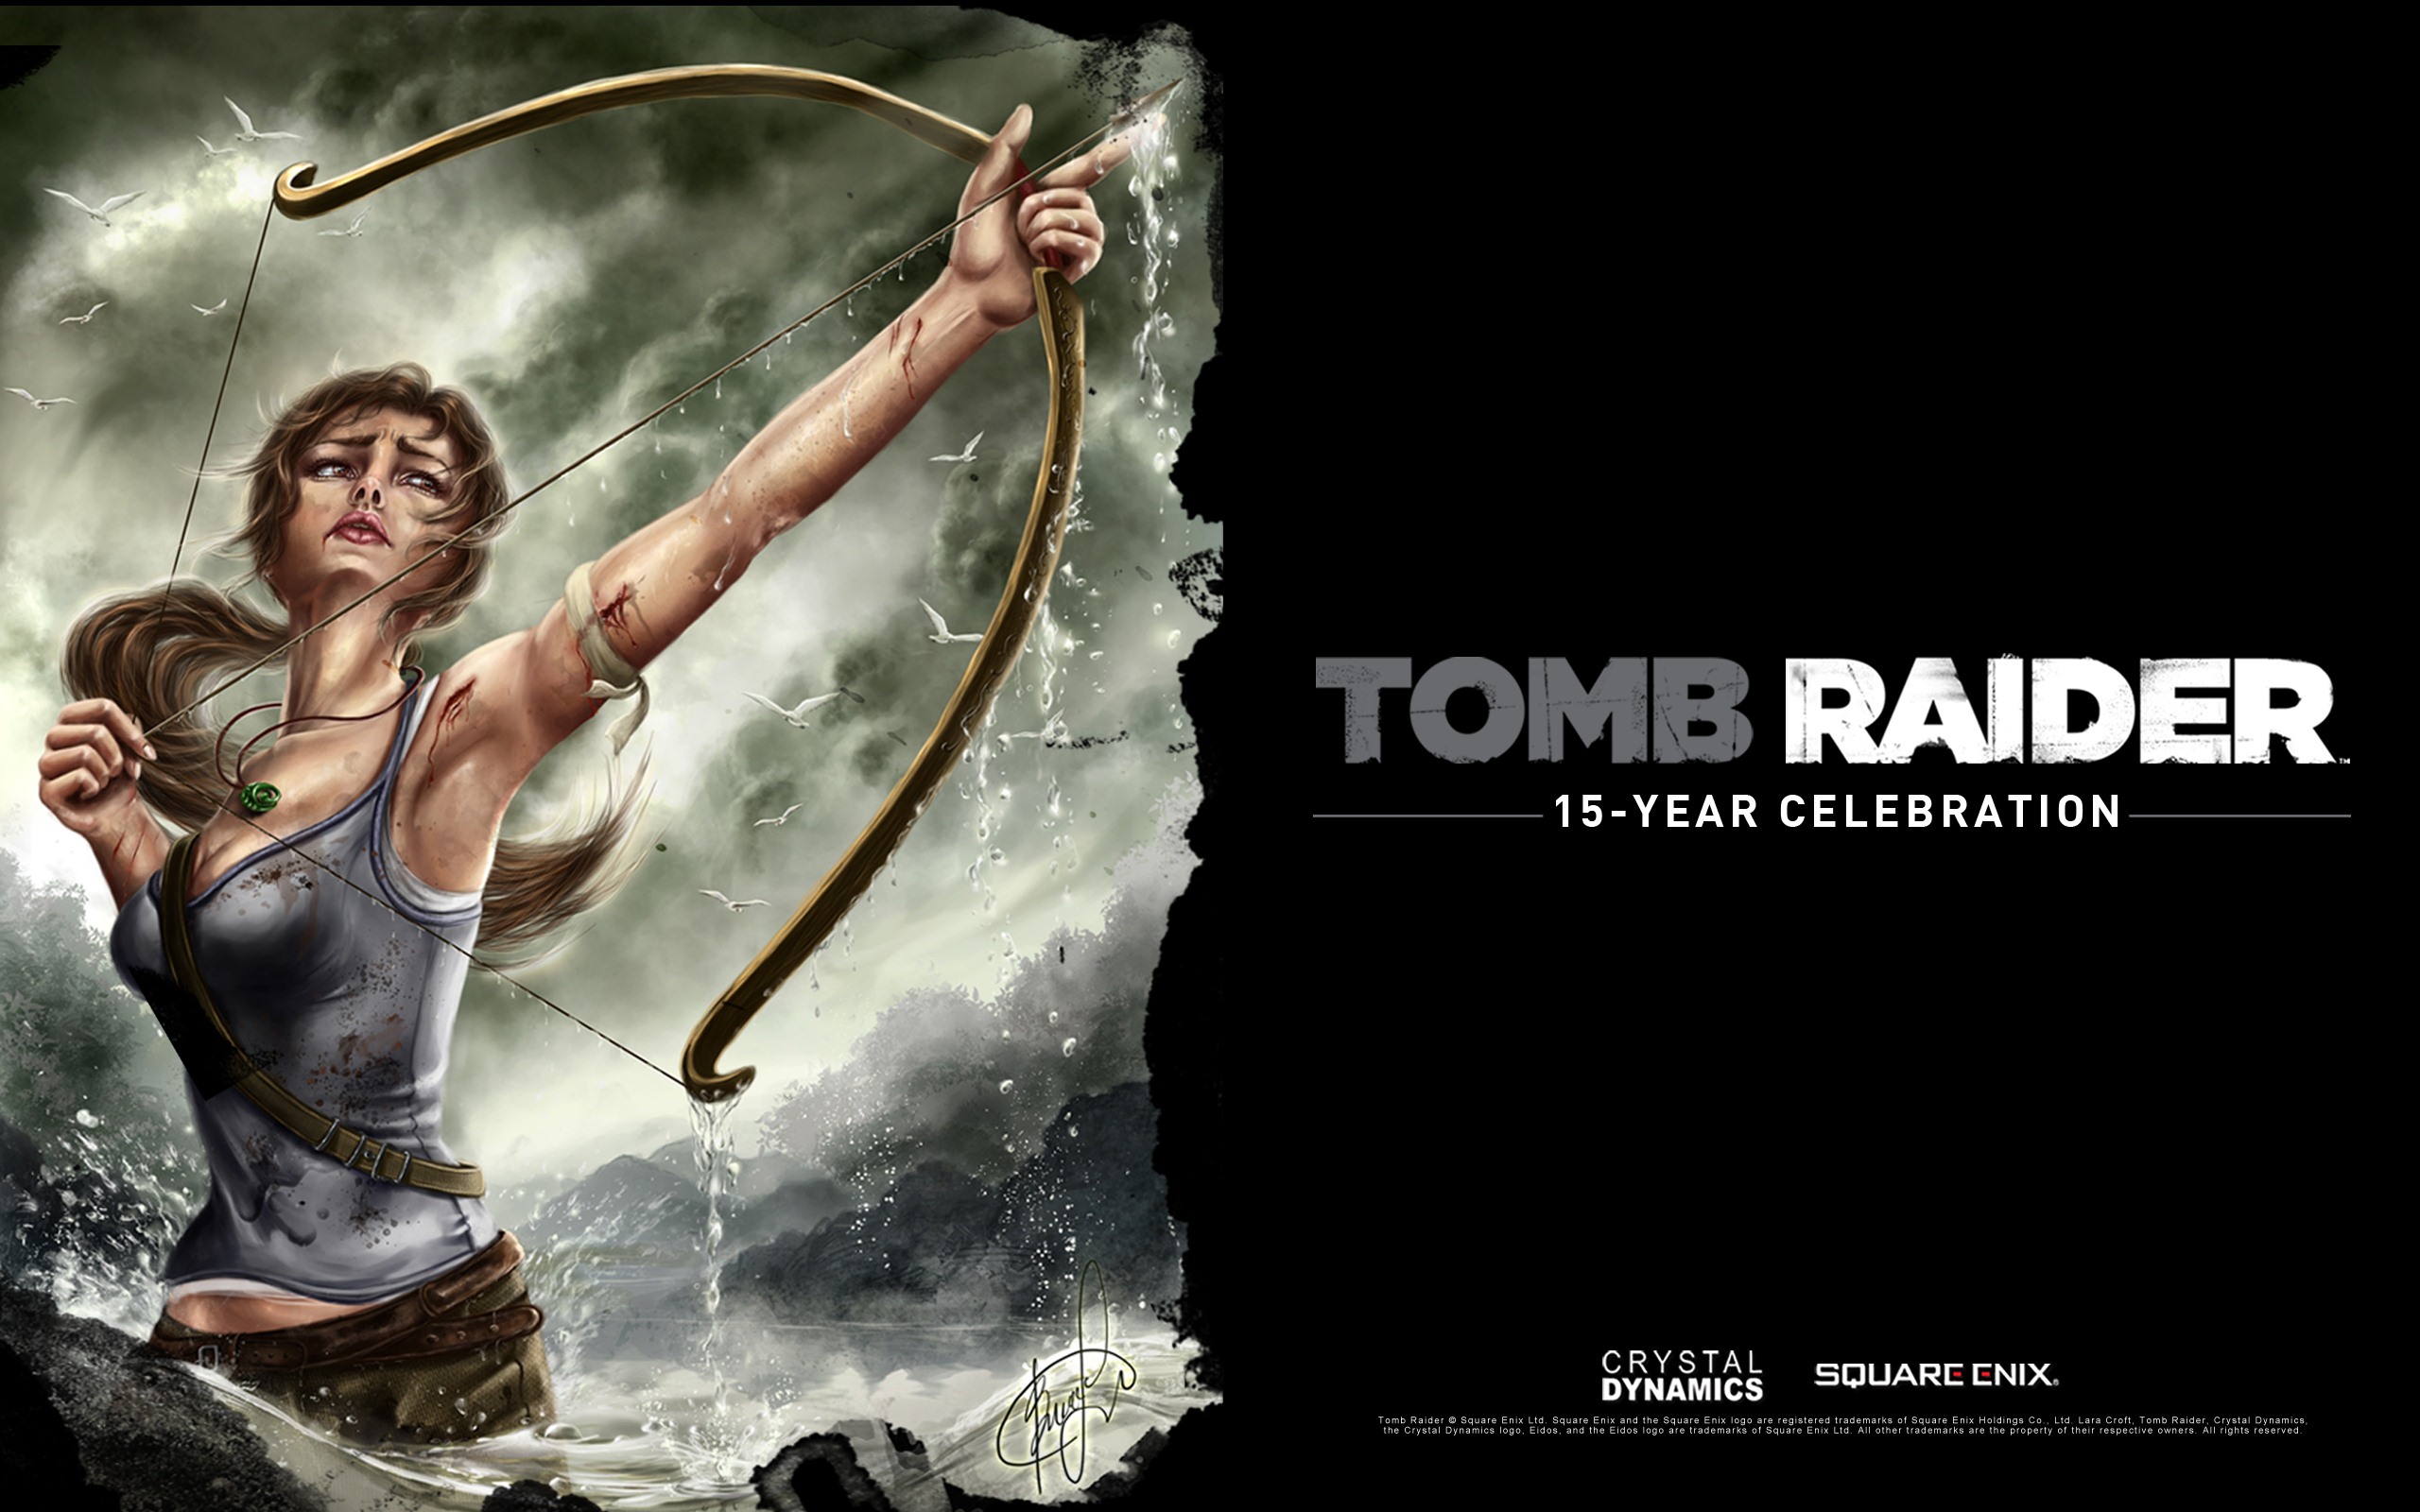 Tomb Raider 15-Year Celebration 古墓丽影15周年纪念版 高清壁纸5 - 2560x1600